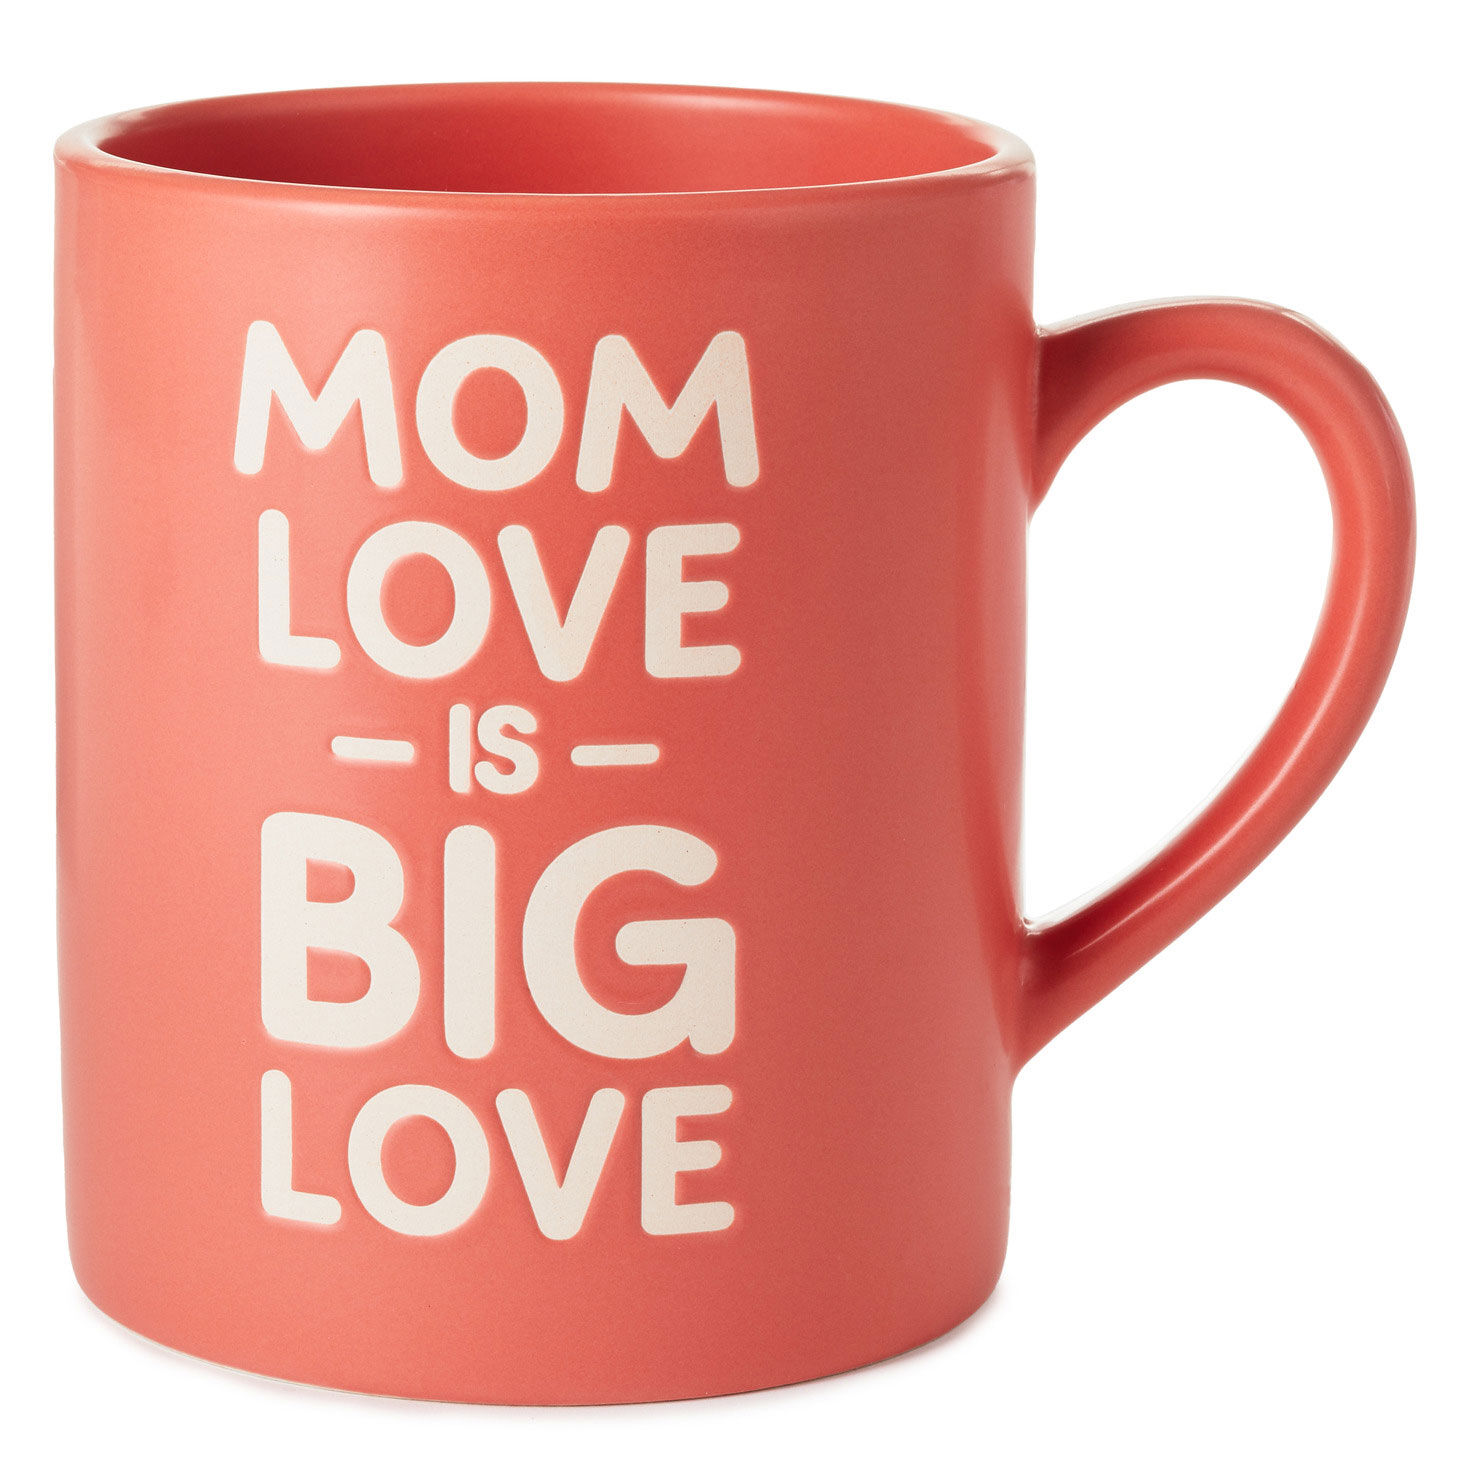 Mom Love Is Big Love Jumbo Mug, 60 oz. - Mugs & Teacups - Hallmark